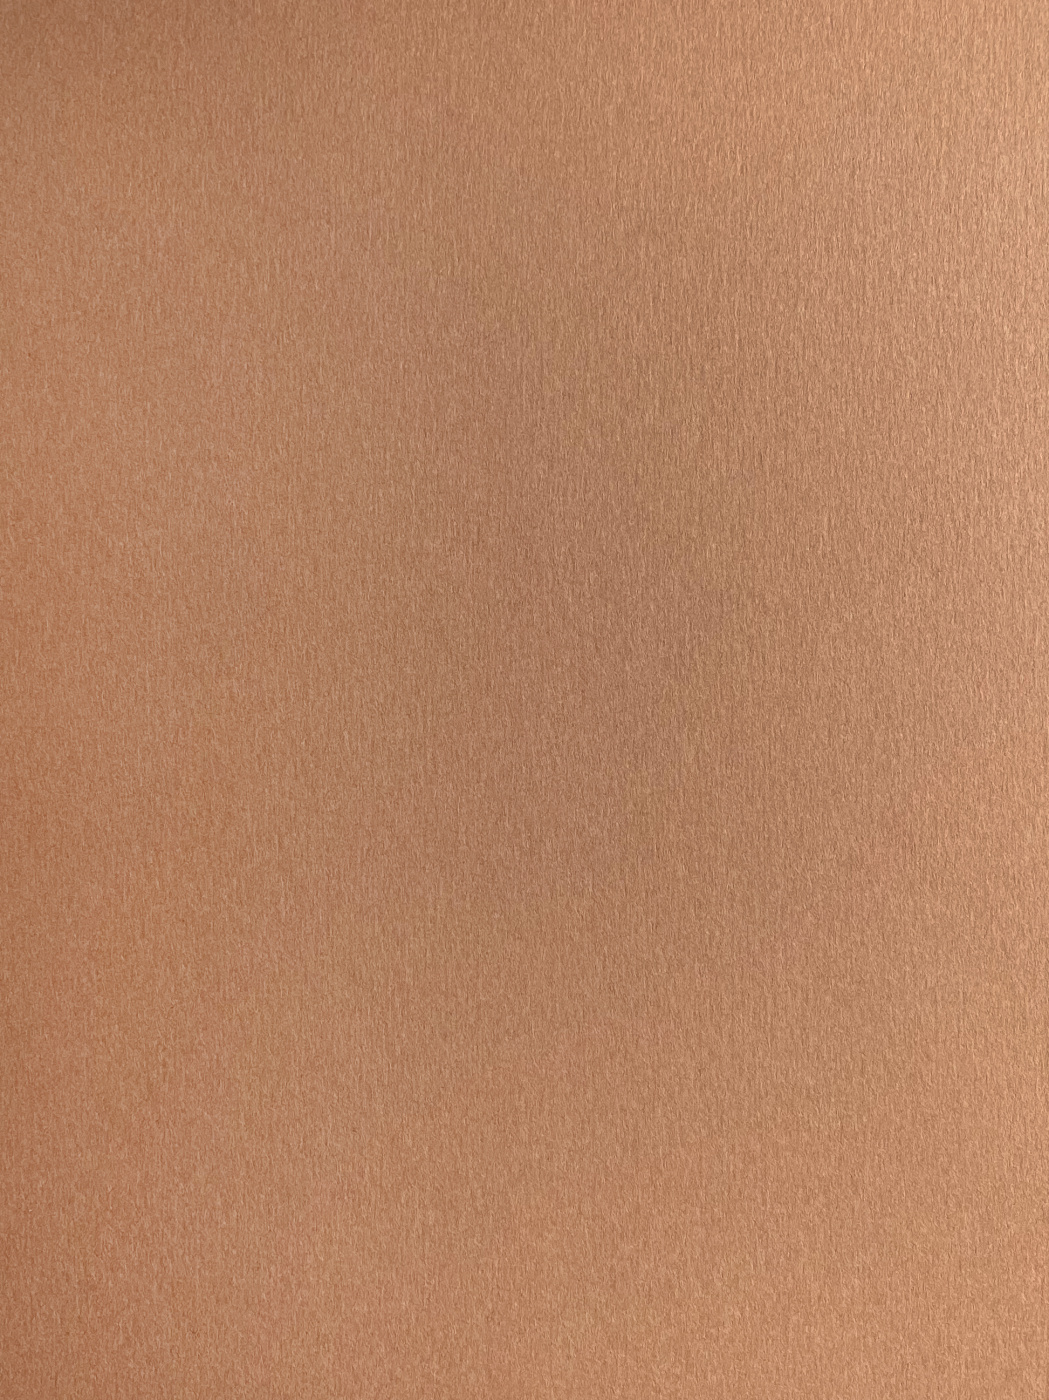 Бумага для пастели Малевичъ GrafArt А4 270 г, коричневая светлая бумага для пастели малевичъ grafart а4 270 г коричневая